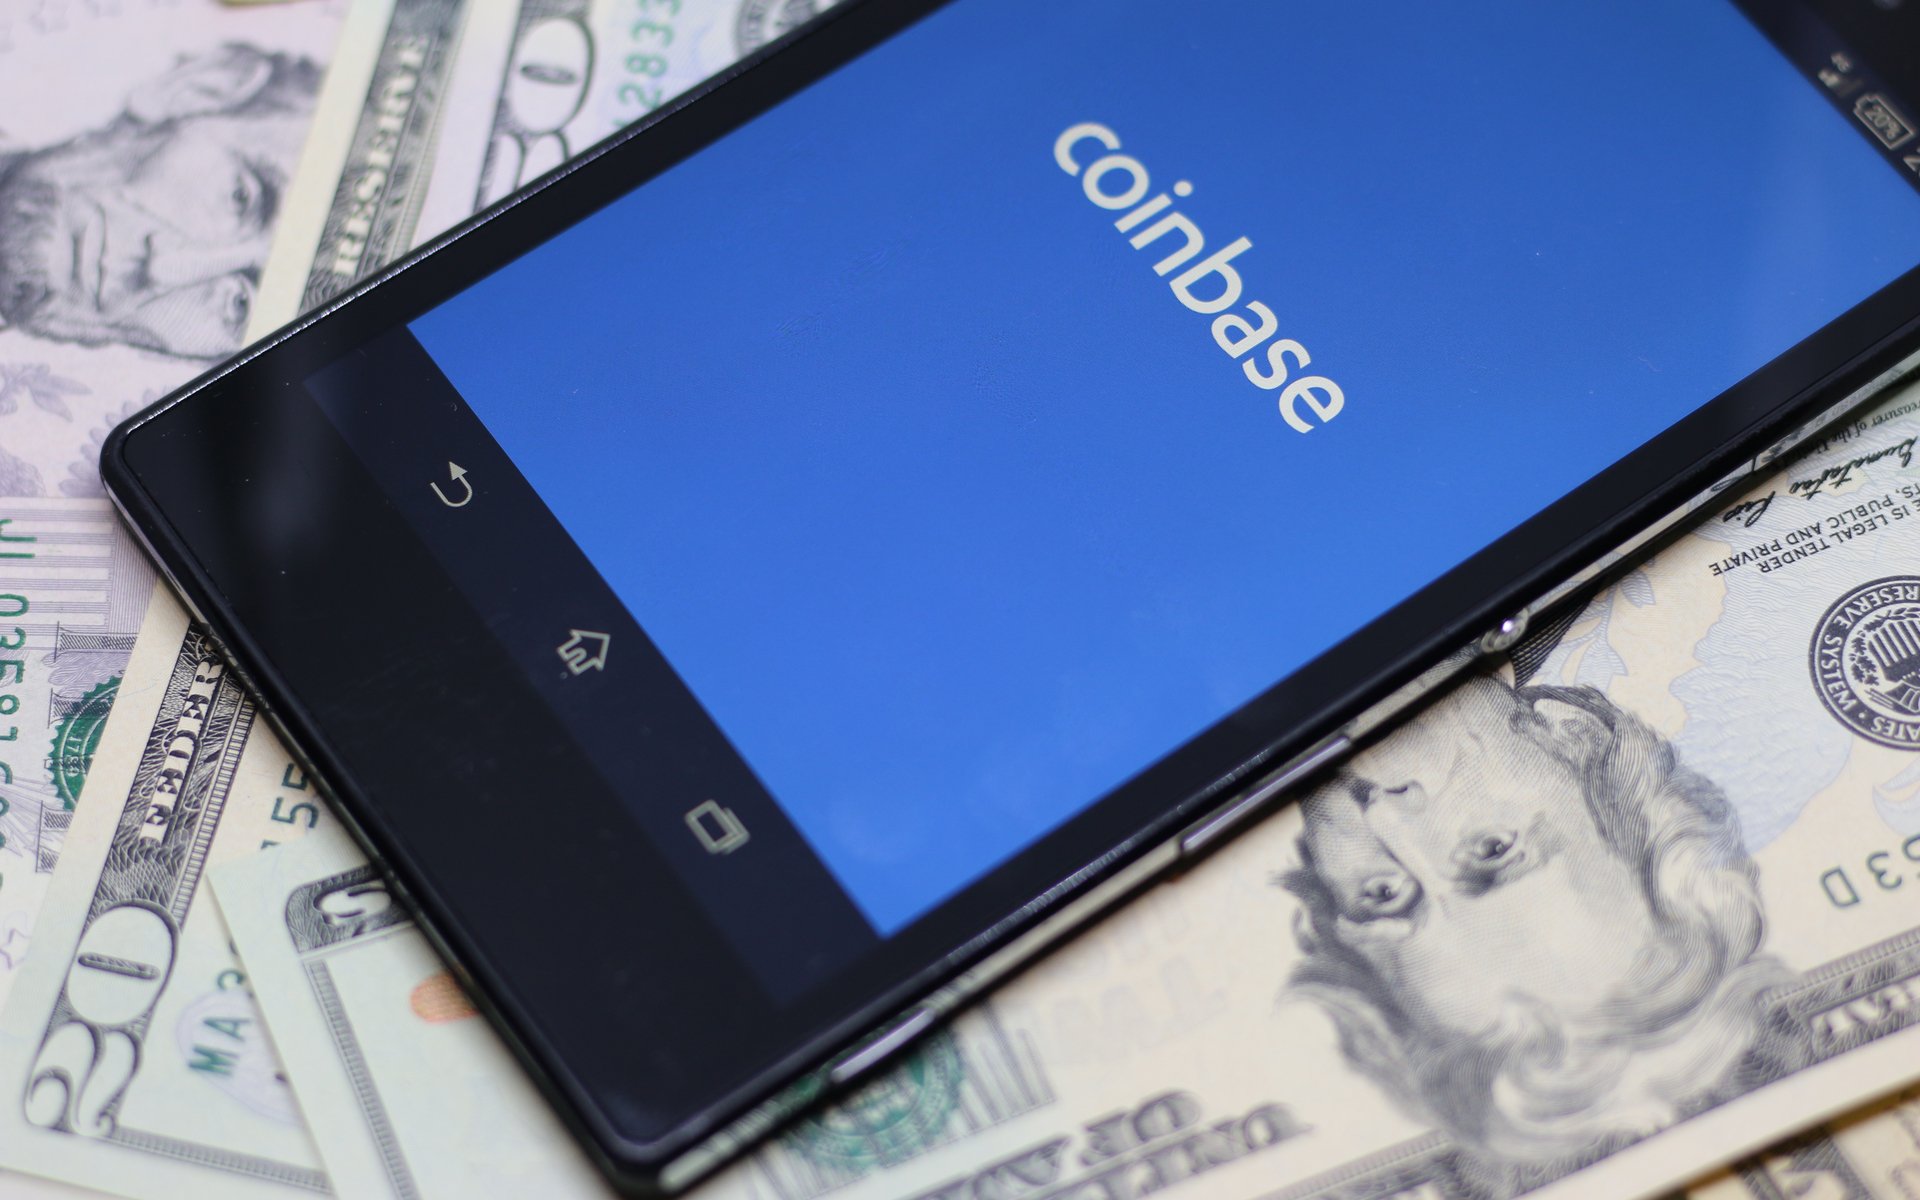 บัตร COINBASE สามารถใช้งานร่วมกับ GOOGLE PAY ได้แล้ว